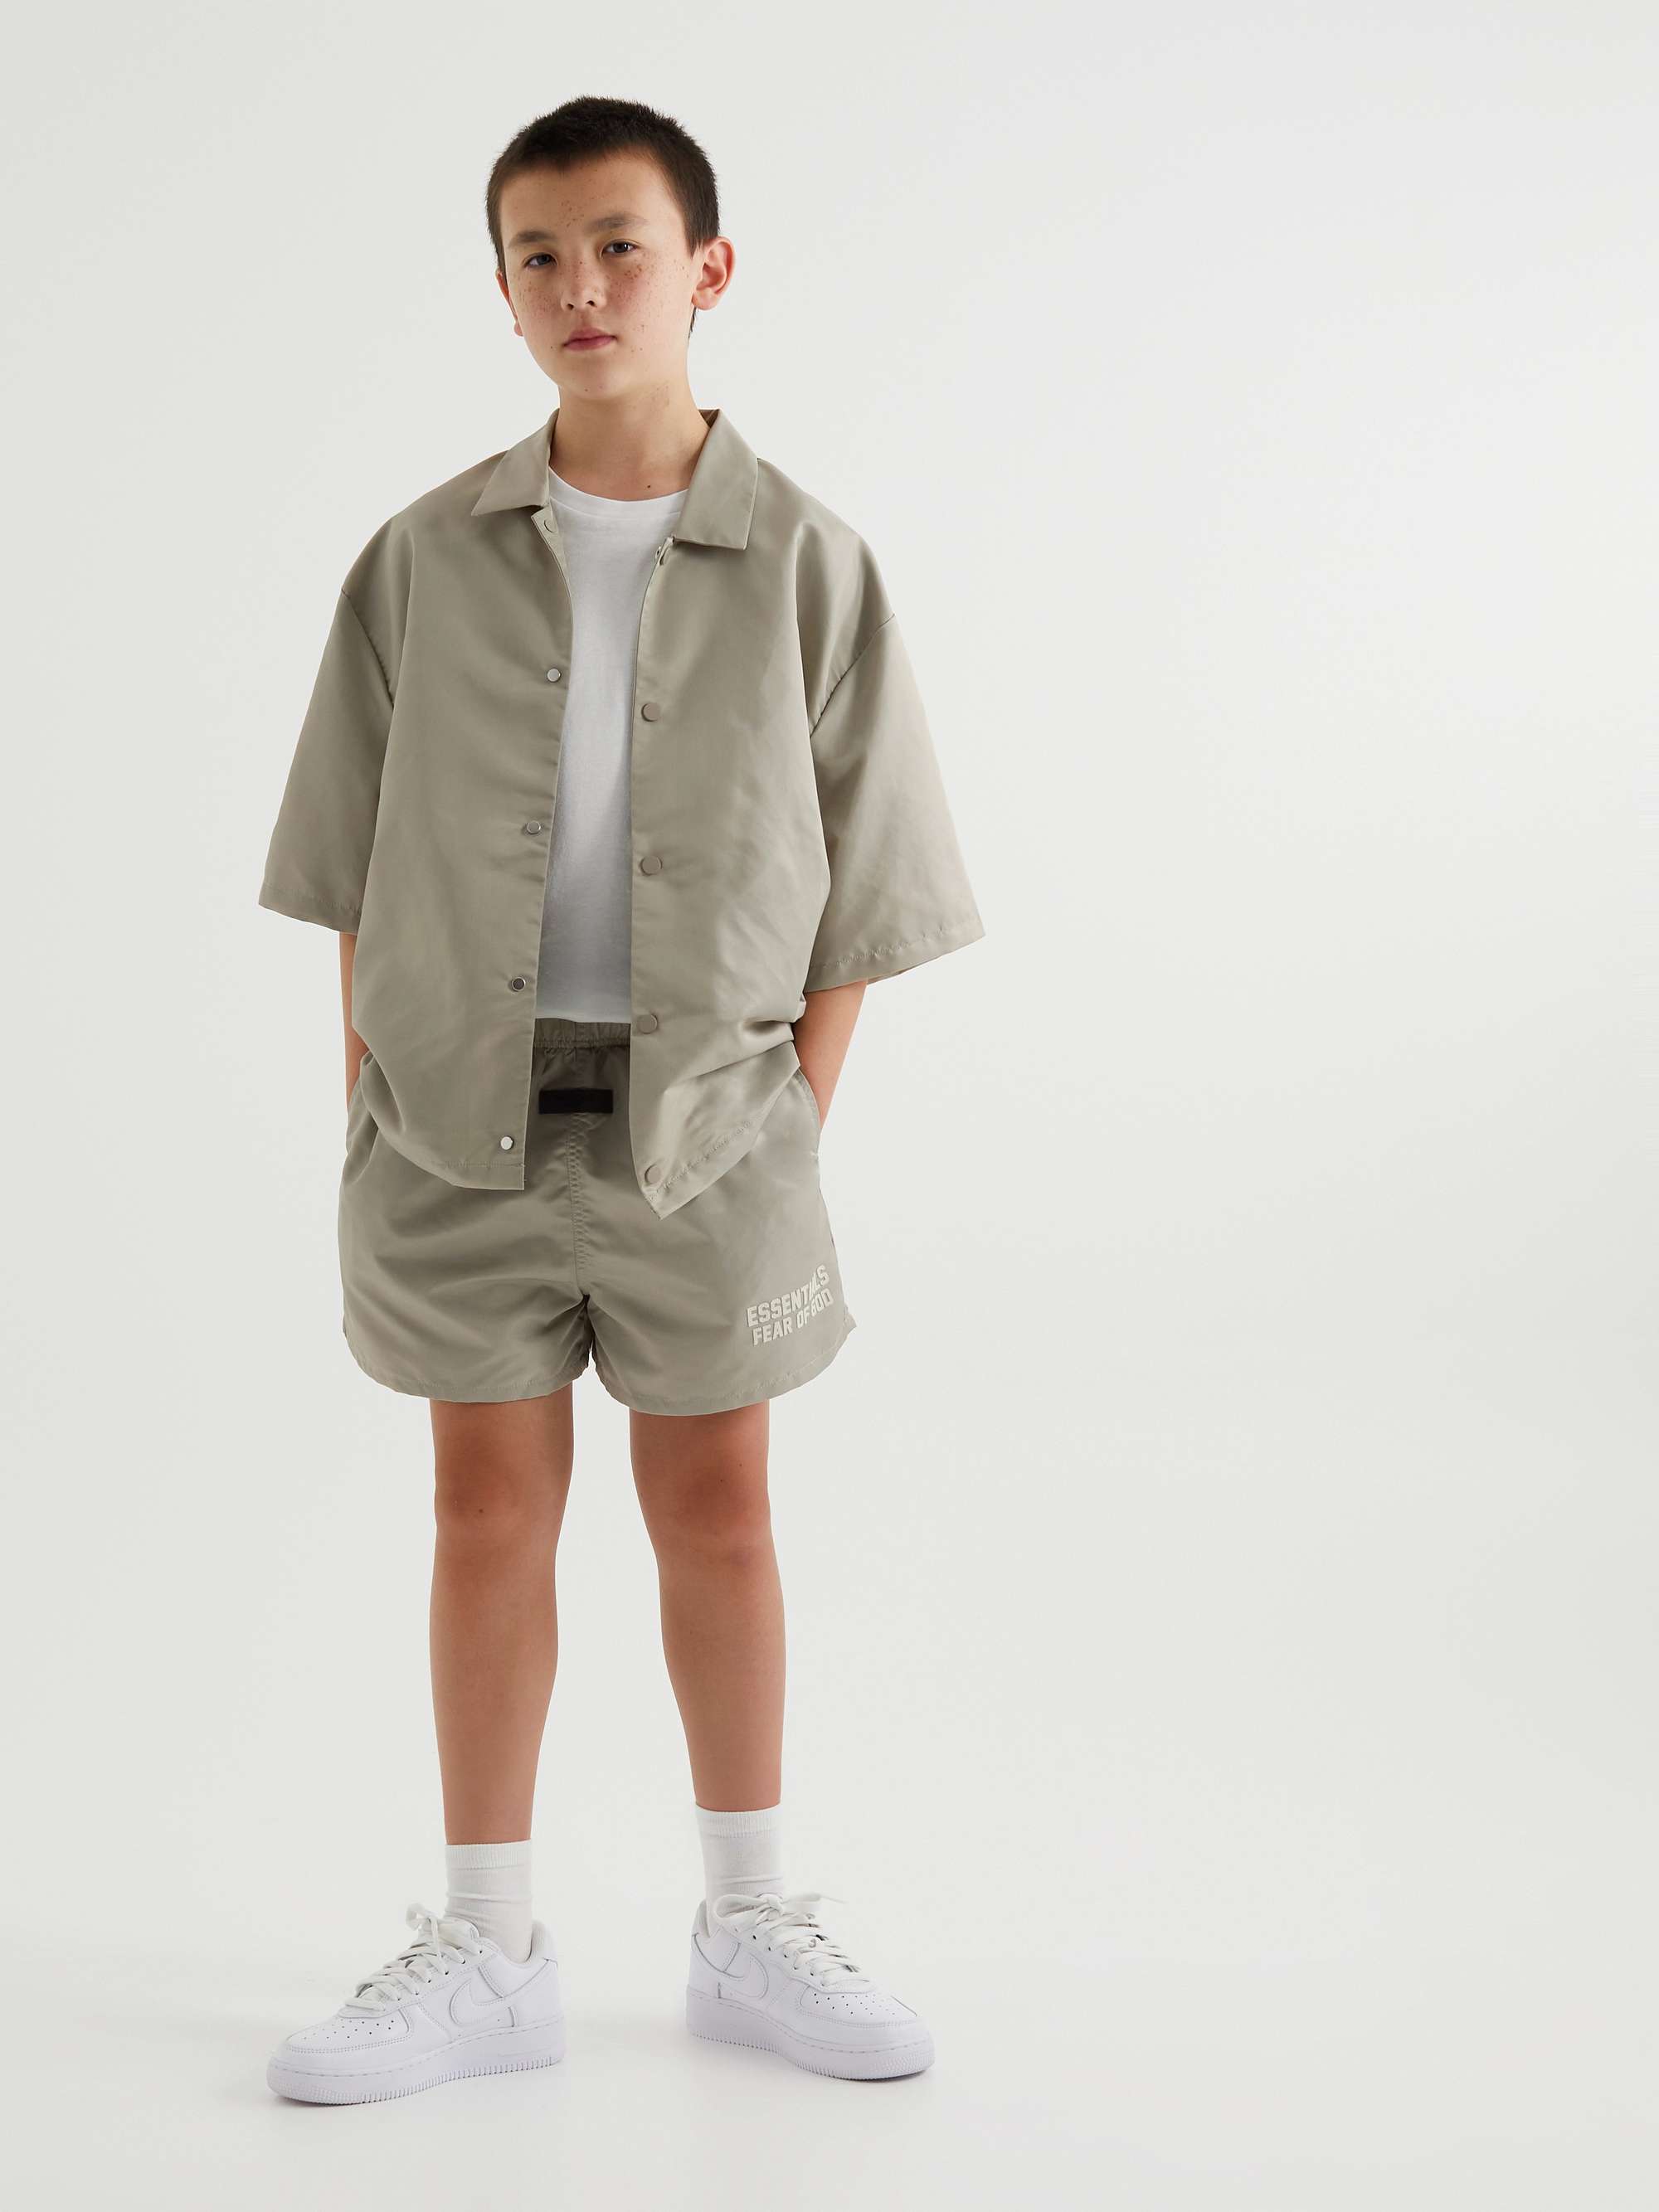 피어오브갓 에센셜 키즈 반바지 FEAR OF GOD ESSENTIALS KIDS Appliqued Shell Shorts,Light gray